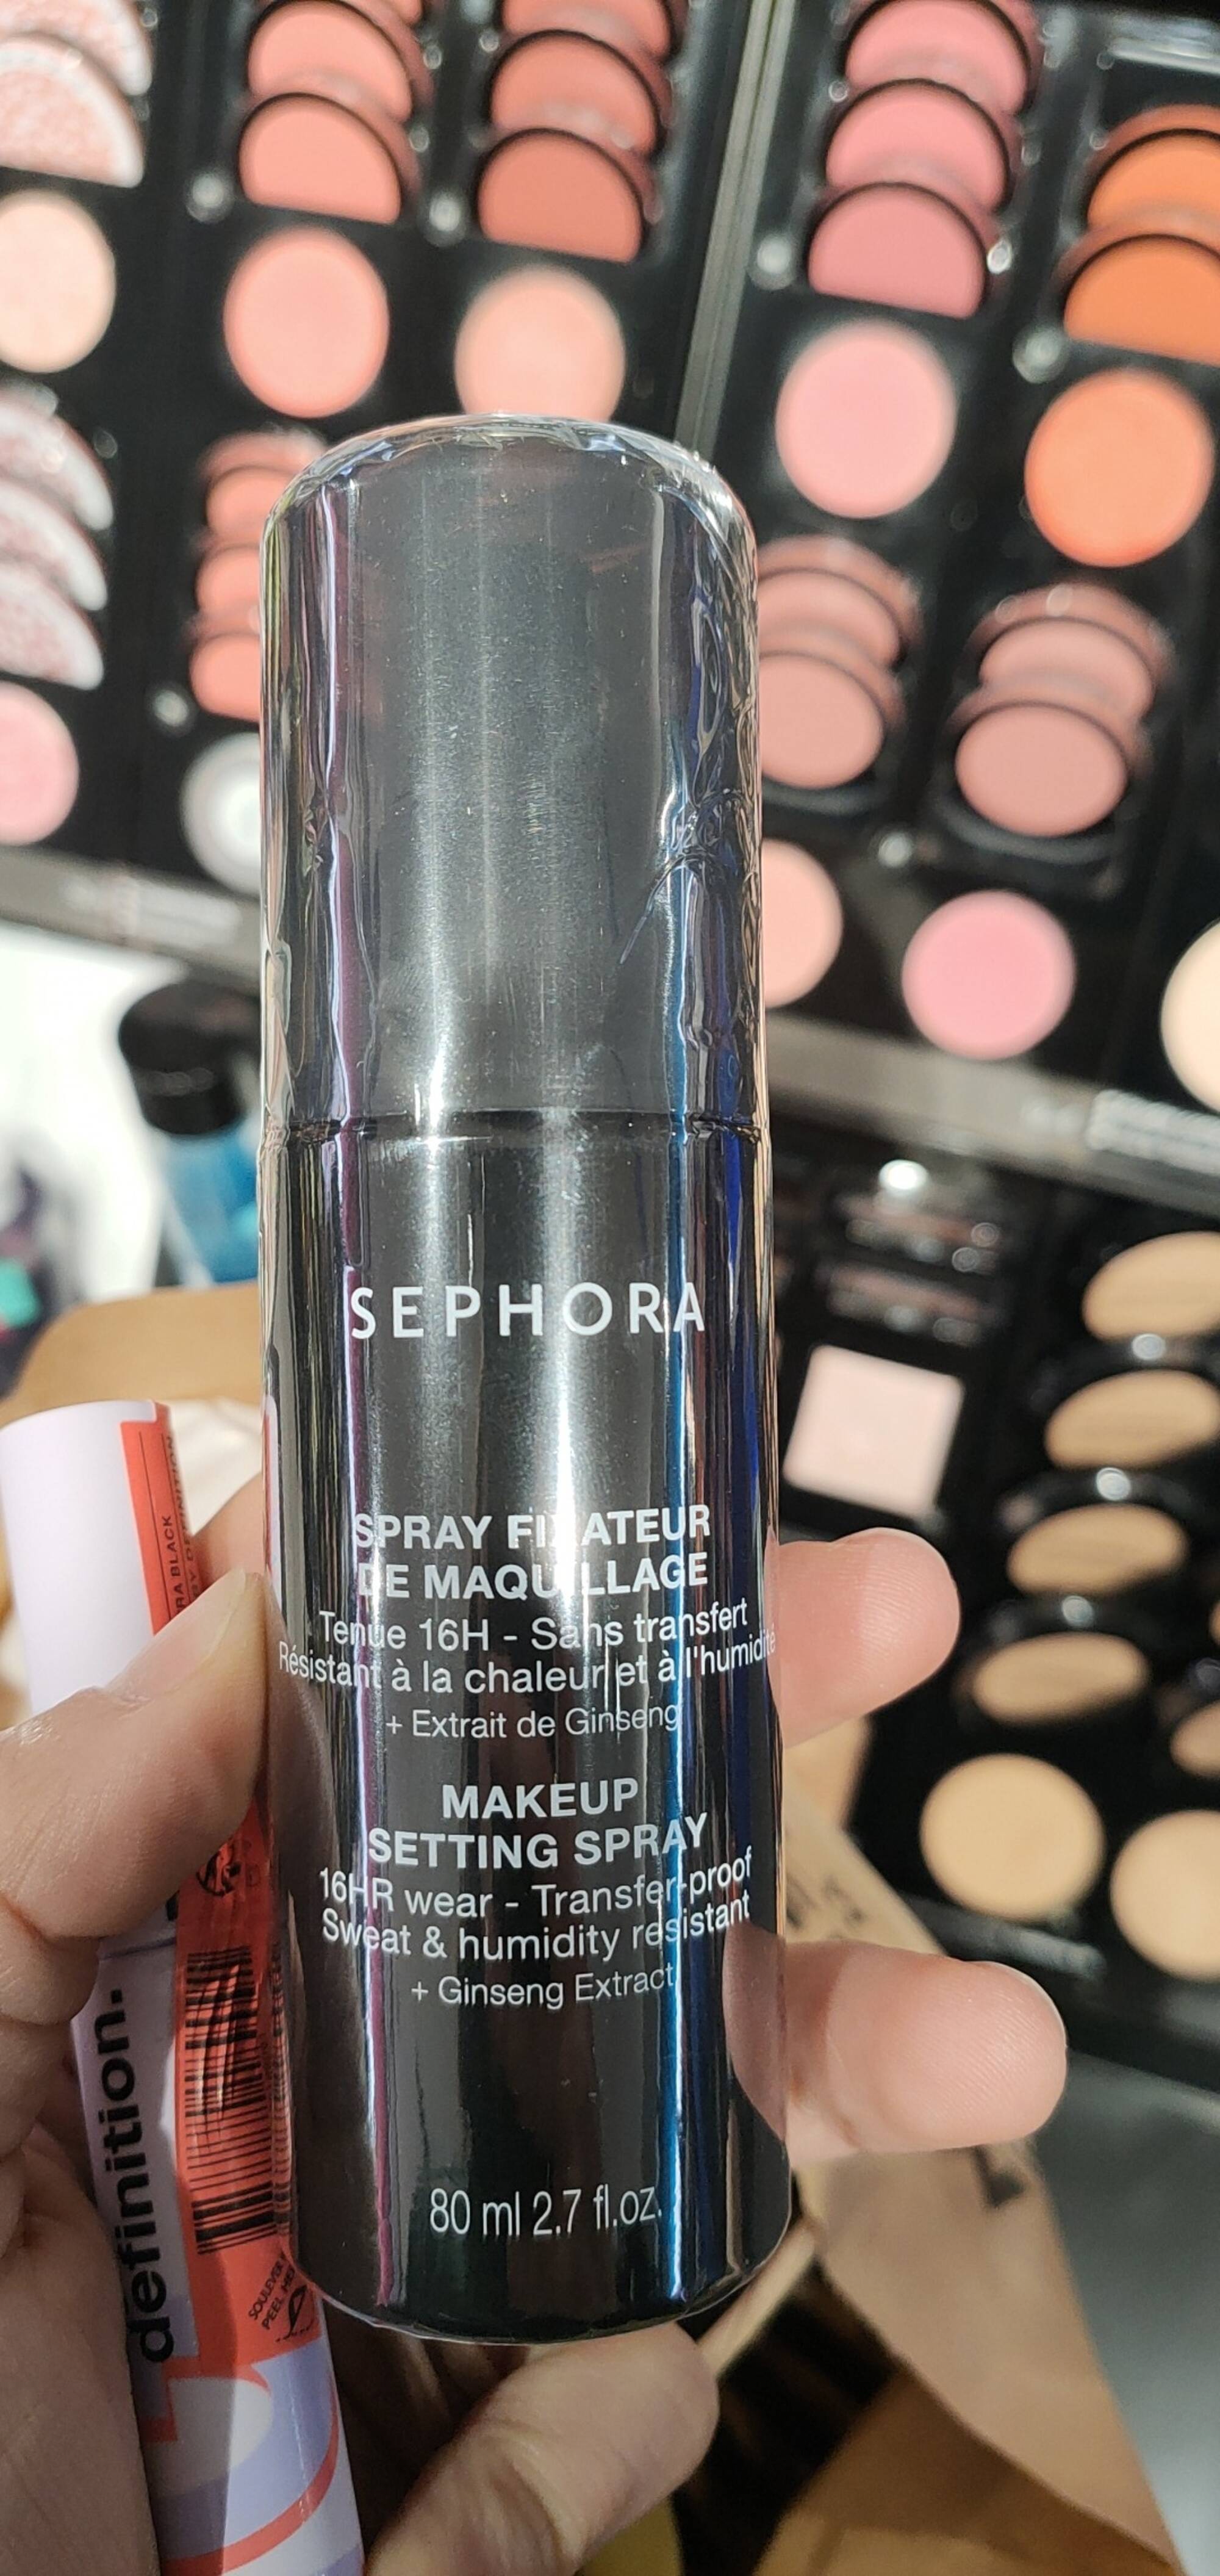 Composition SEPHORA Spray fixateur de maquillage - UFC-Que Choisir